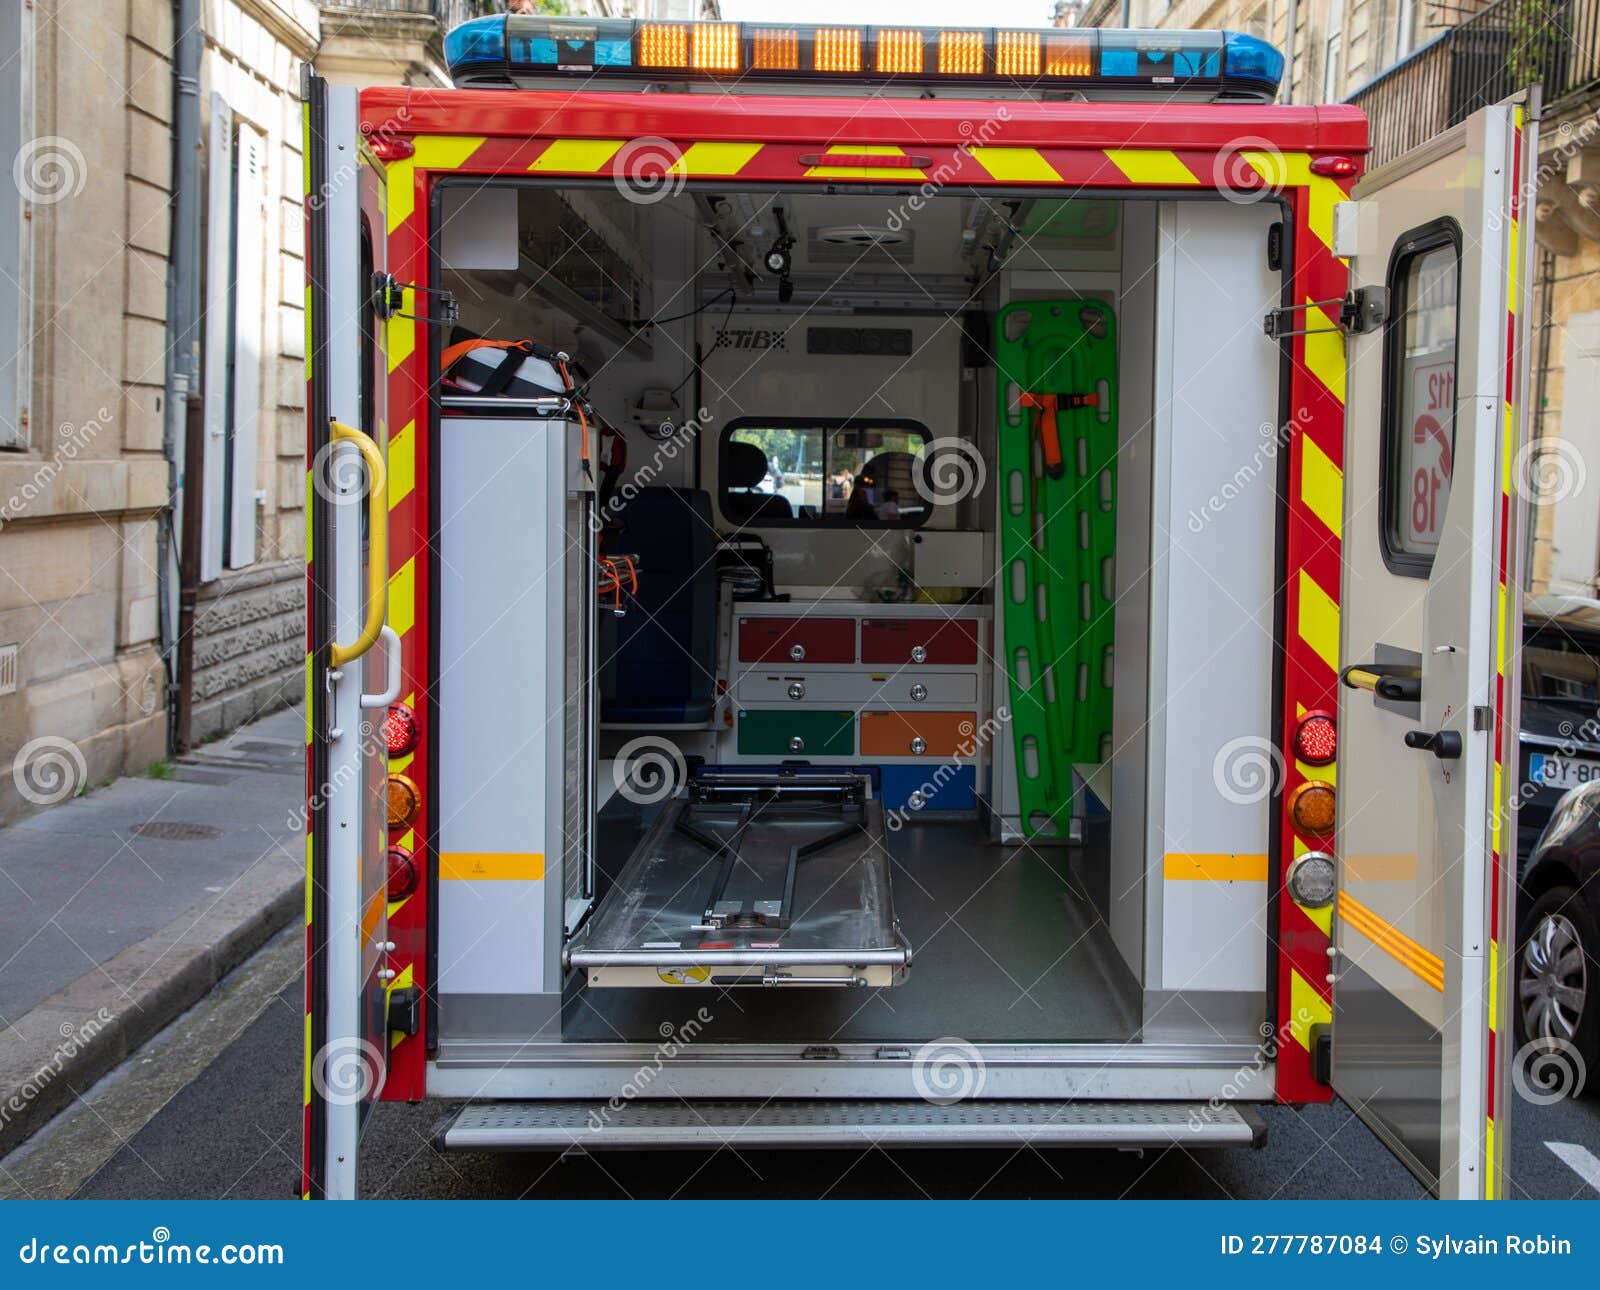 Camion de Pompier avec ambulance